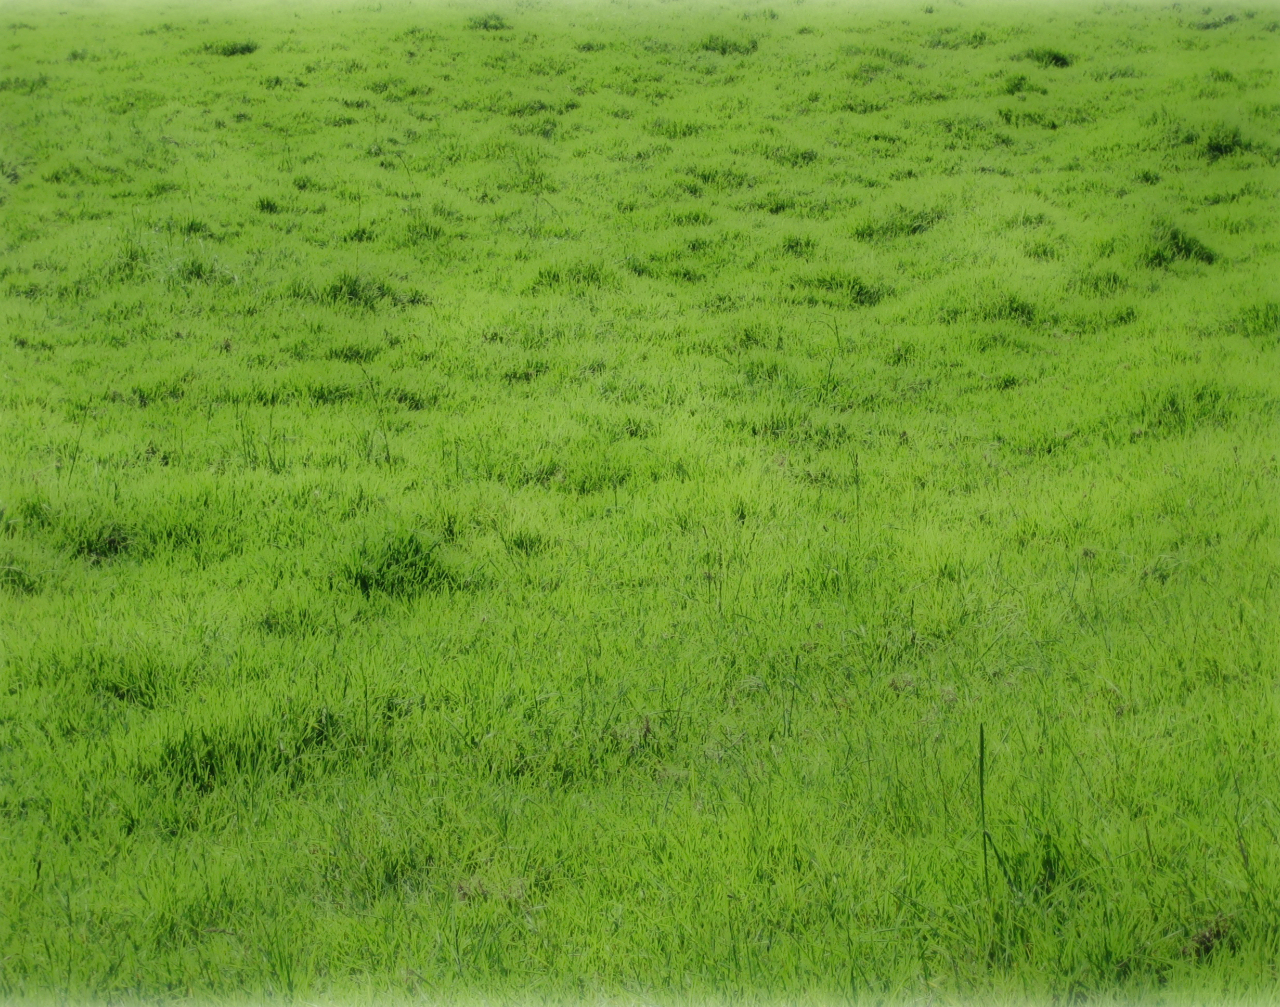 Grassy Field